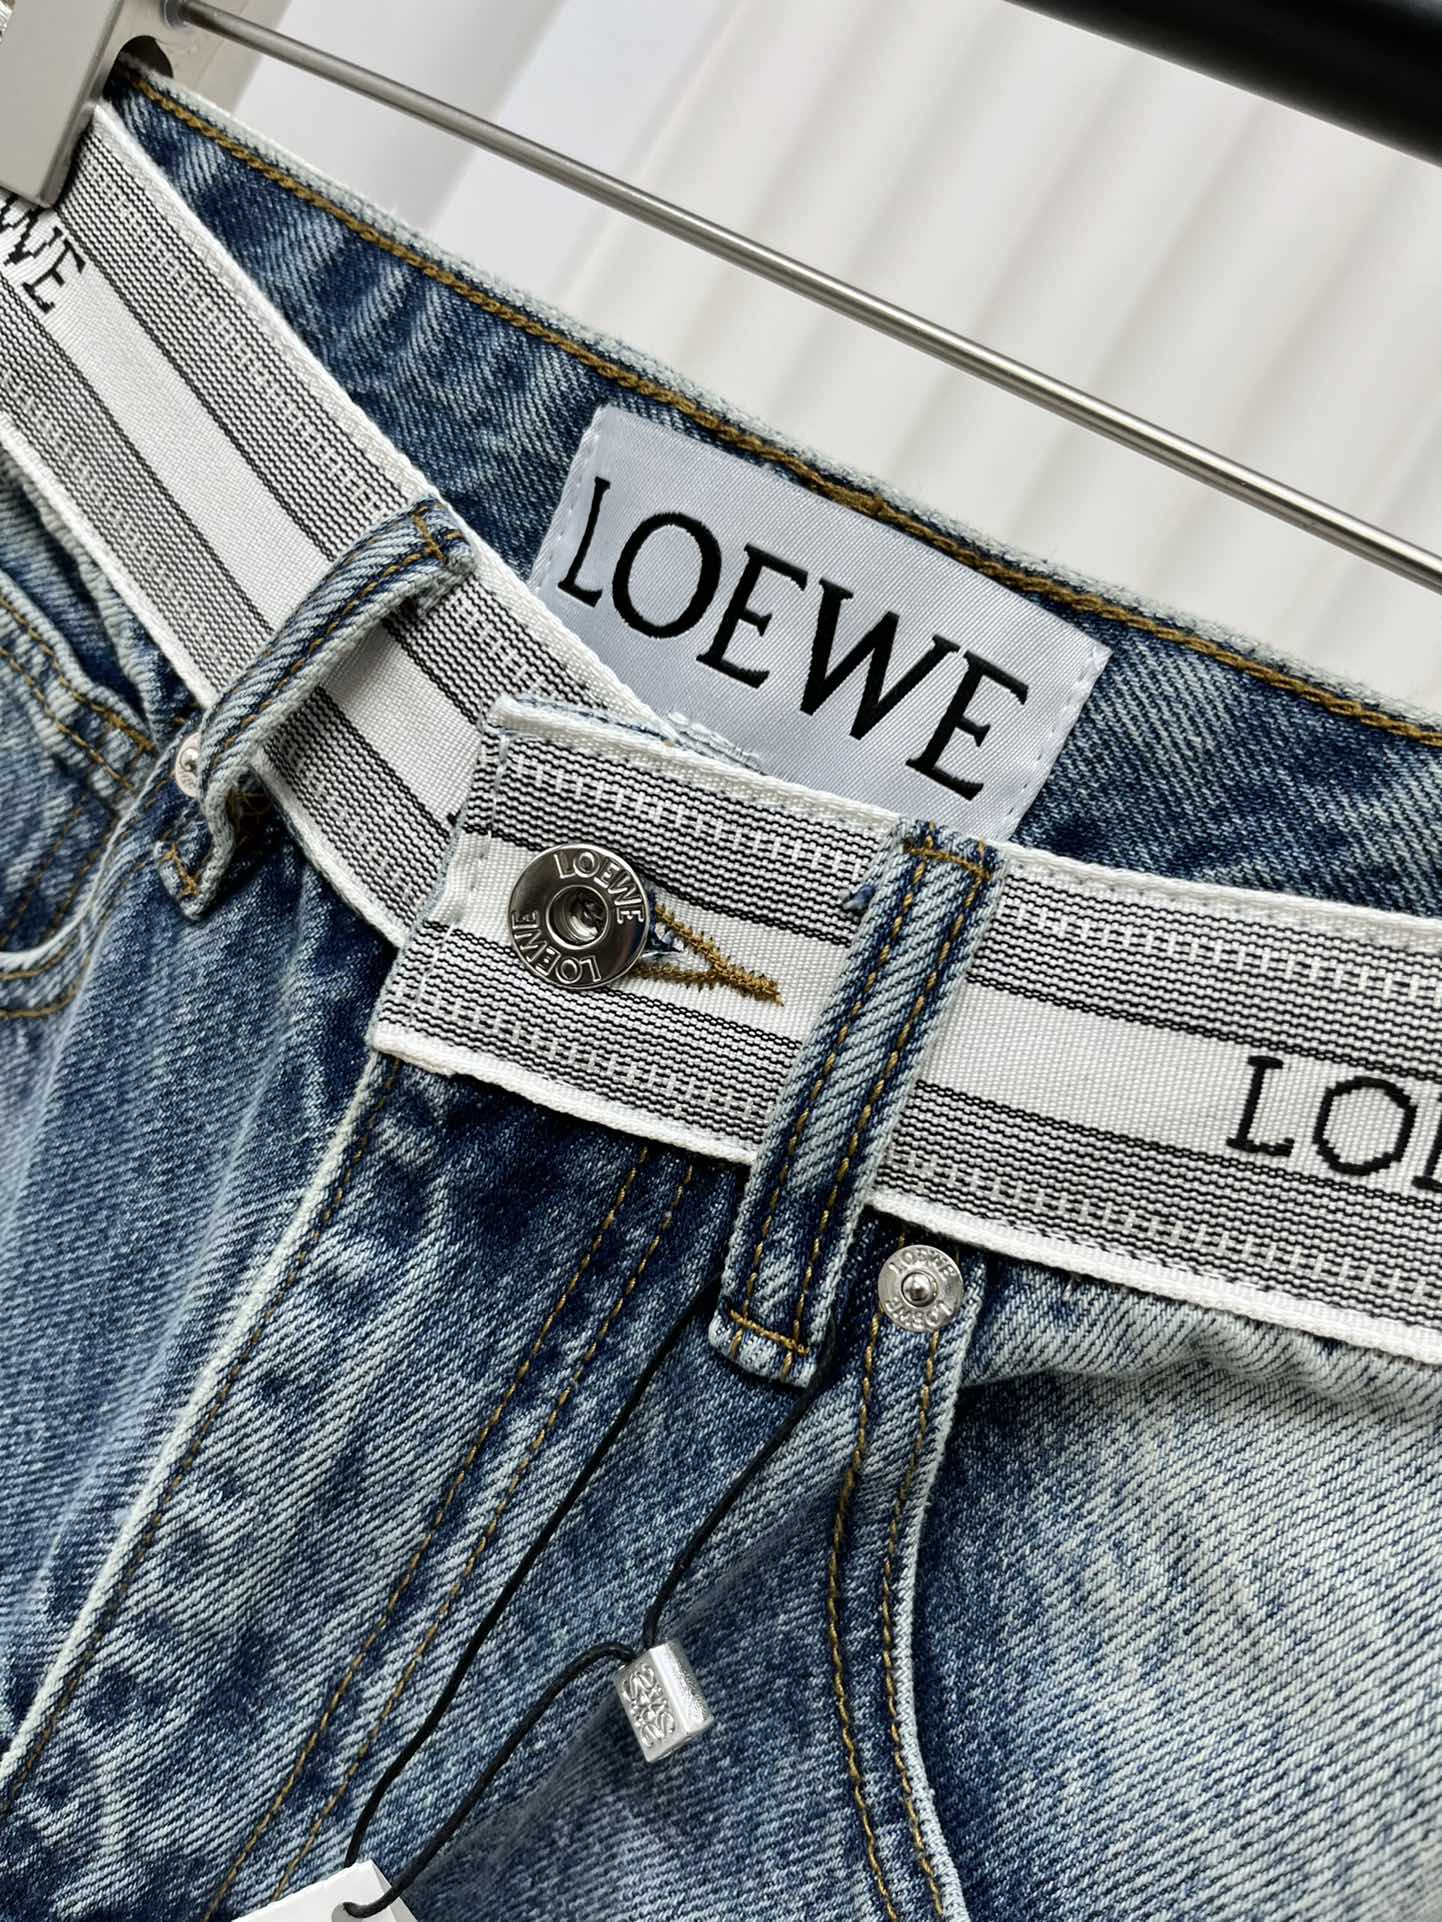 4/爆款现货原单品质Loew*24经典撞色字母腰头牛仔裤复古工艺渐变色洗水面料柔软穿着舒适无束缚感满满的